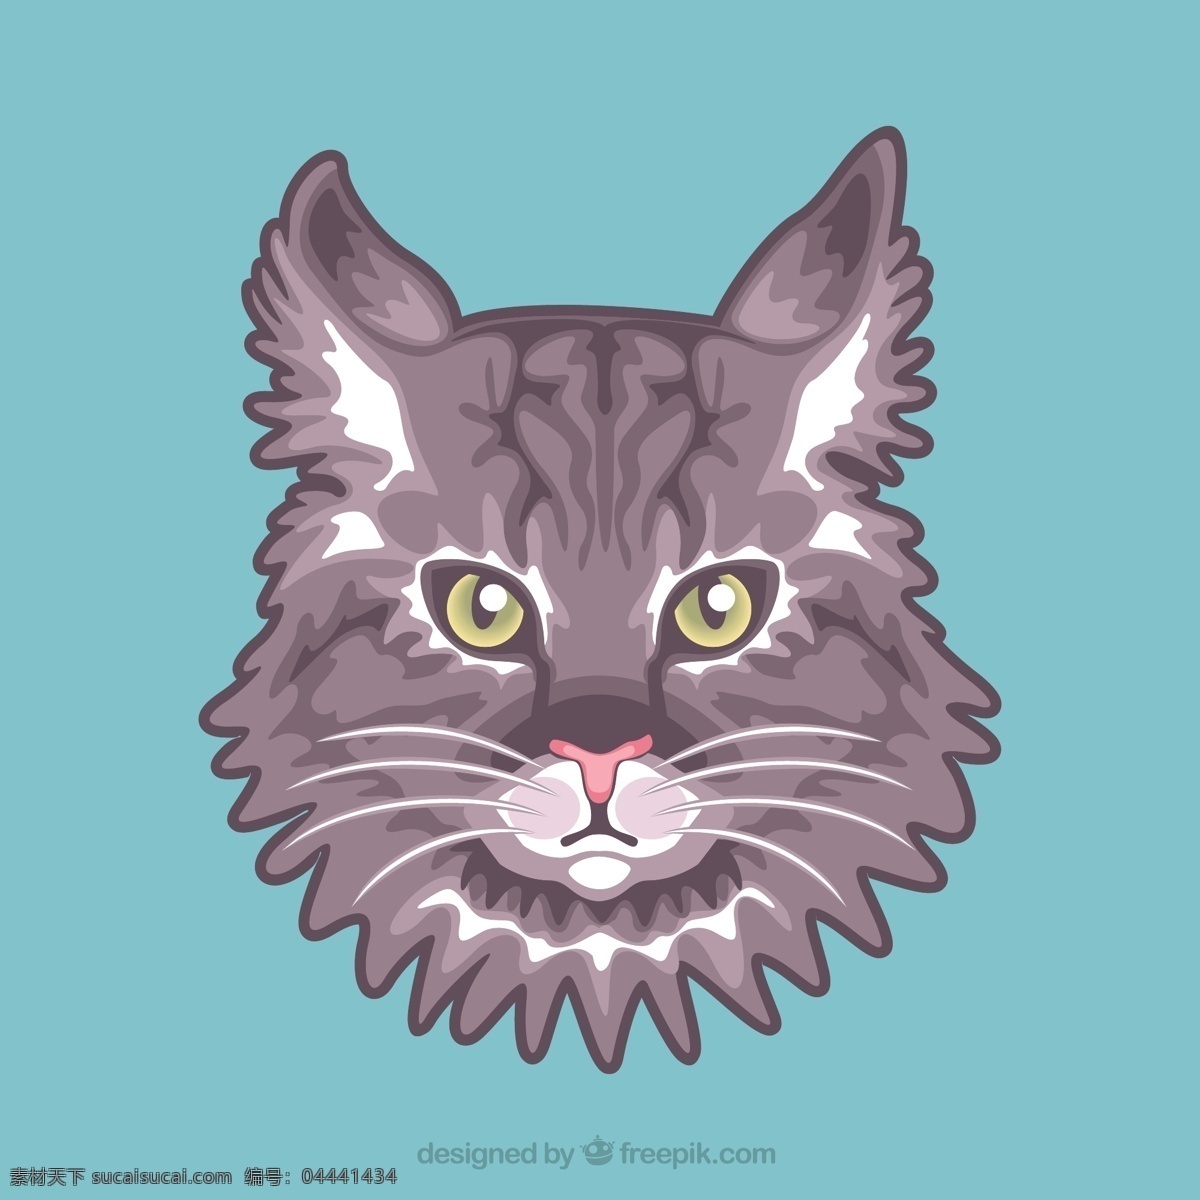 灰色 猫 画像 动物 人物 可爱 橙色 宠物 插图 肖像 可爱动物 青色 天蓝色